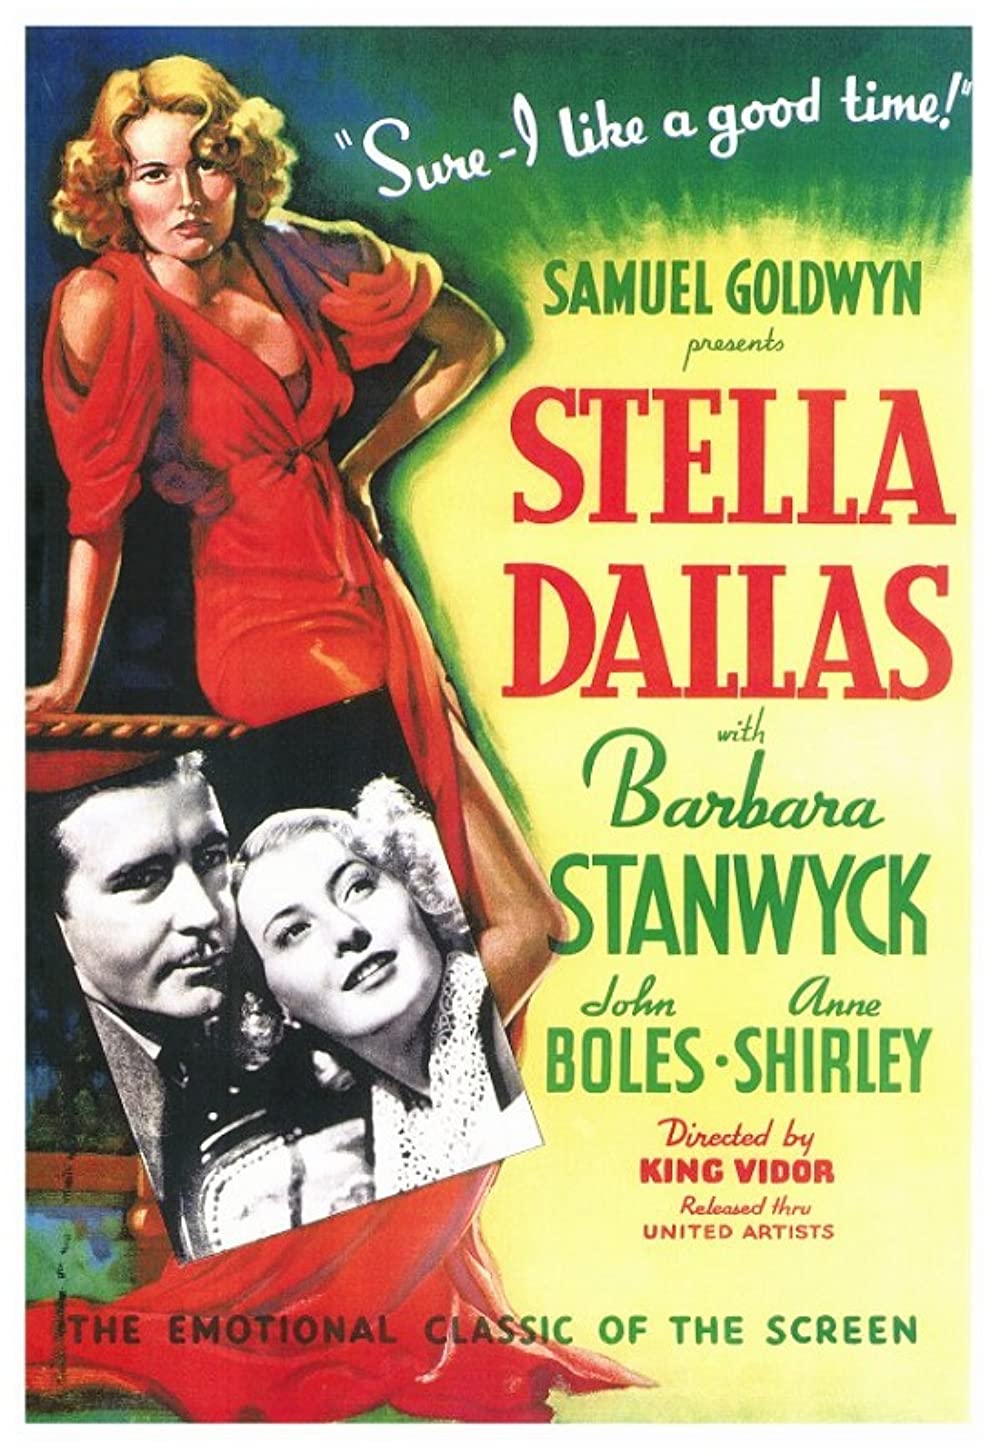 Filmbeschreibung zu Stella Dallas